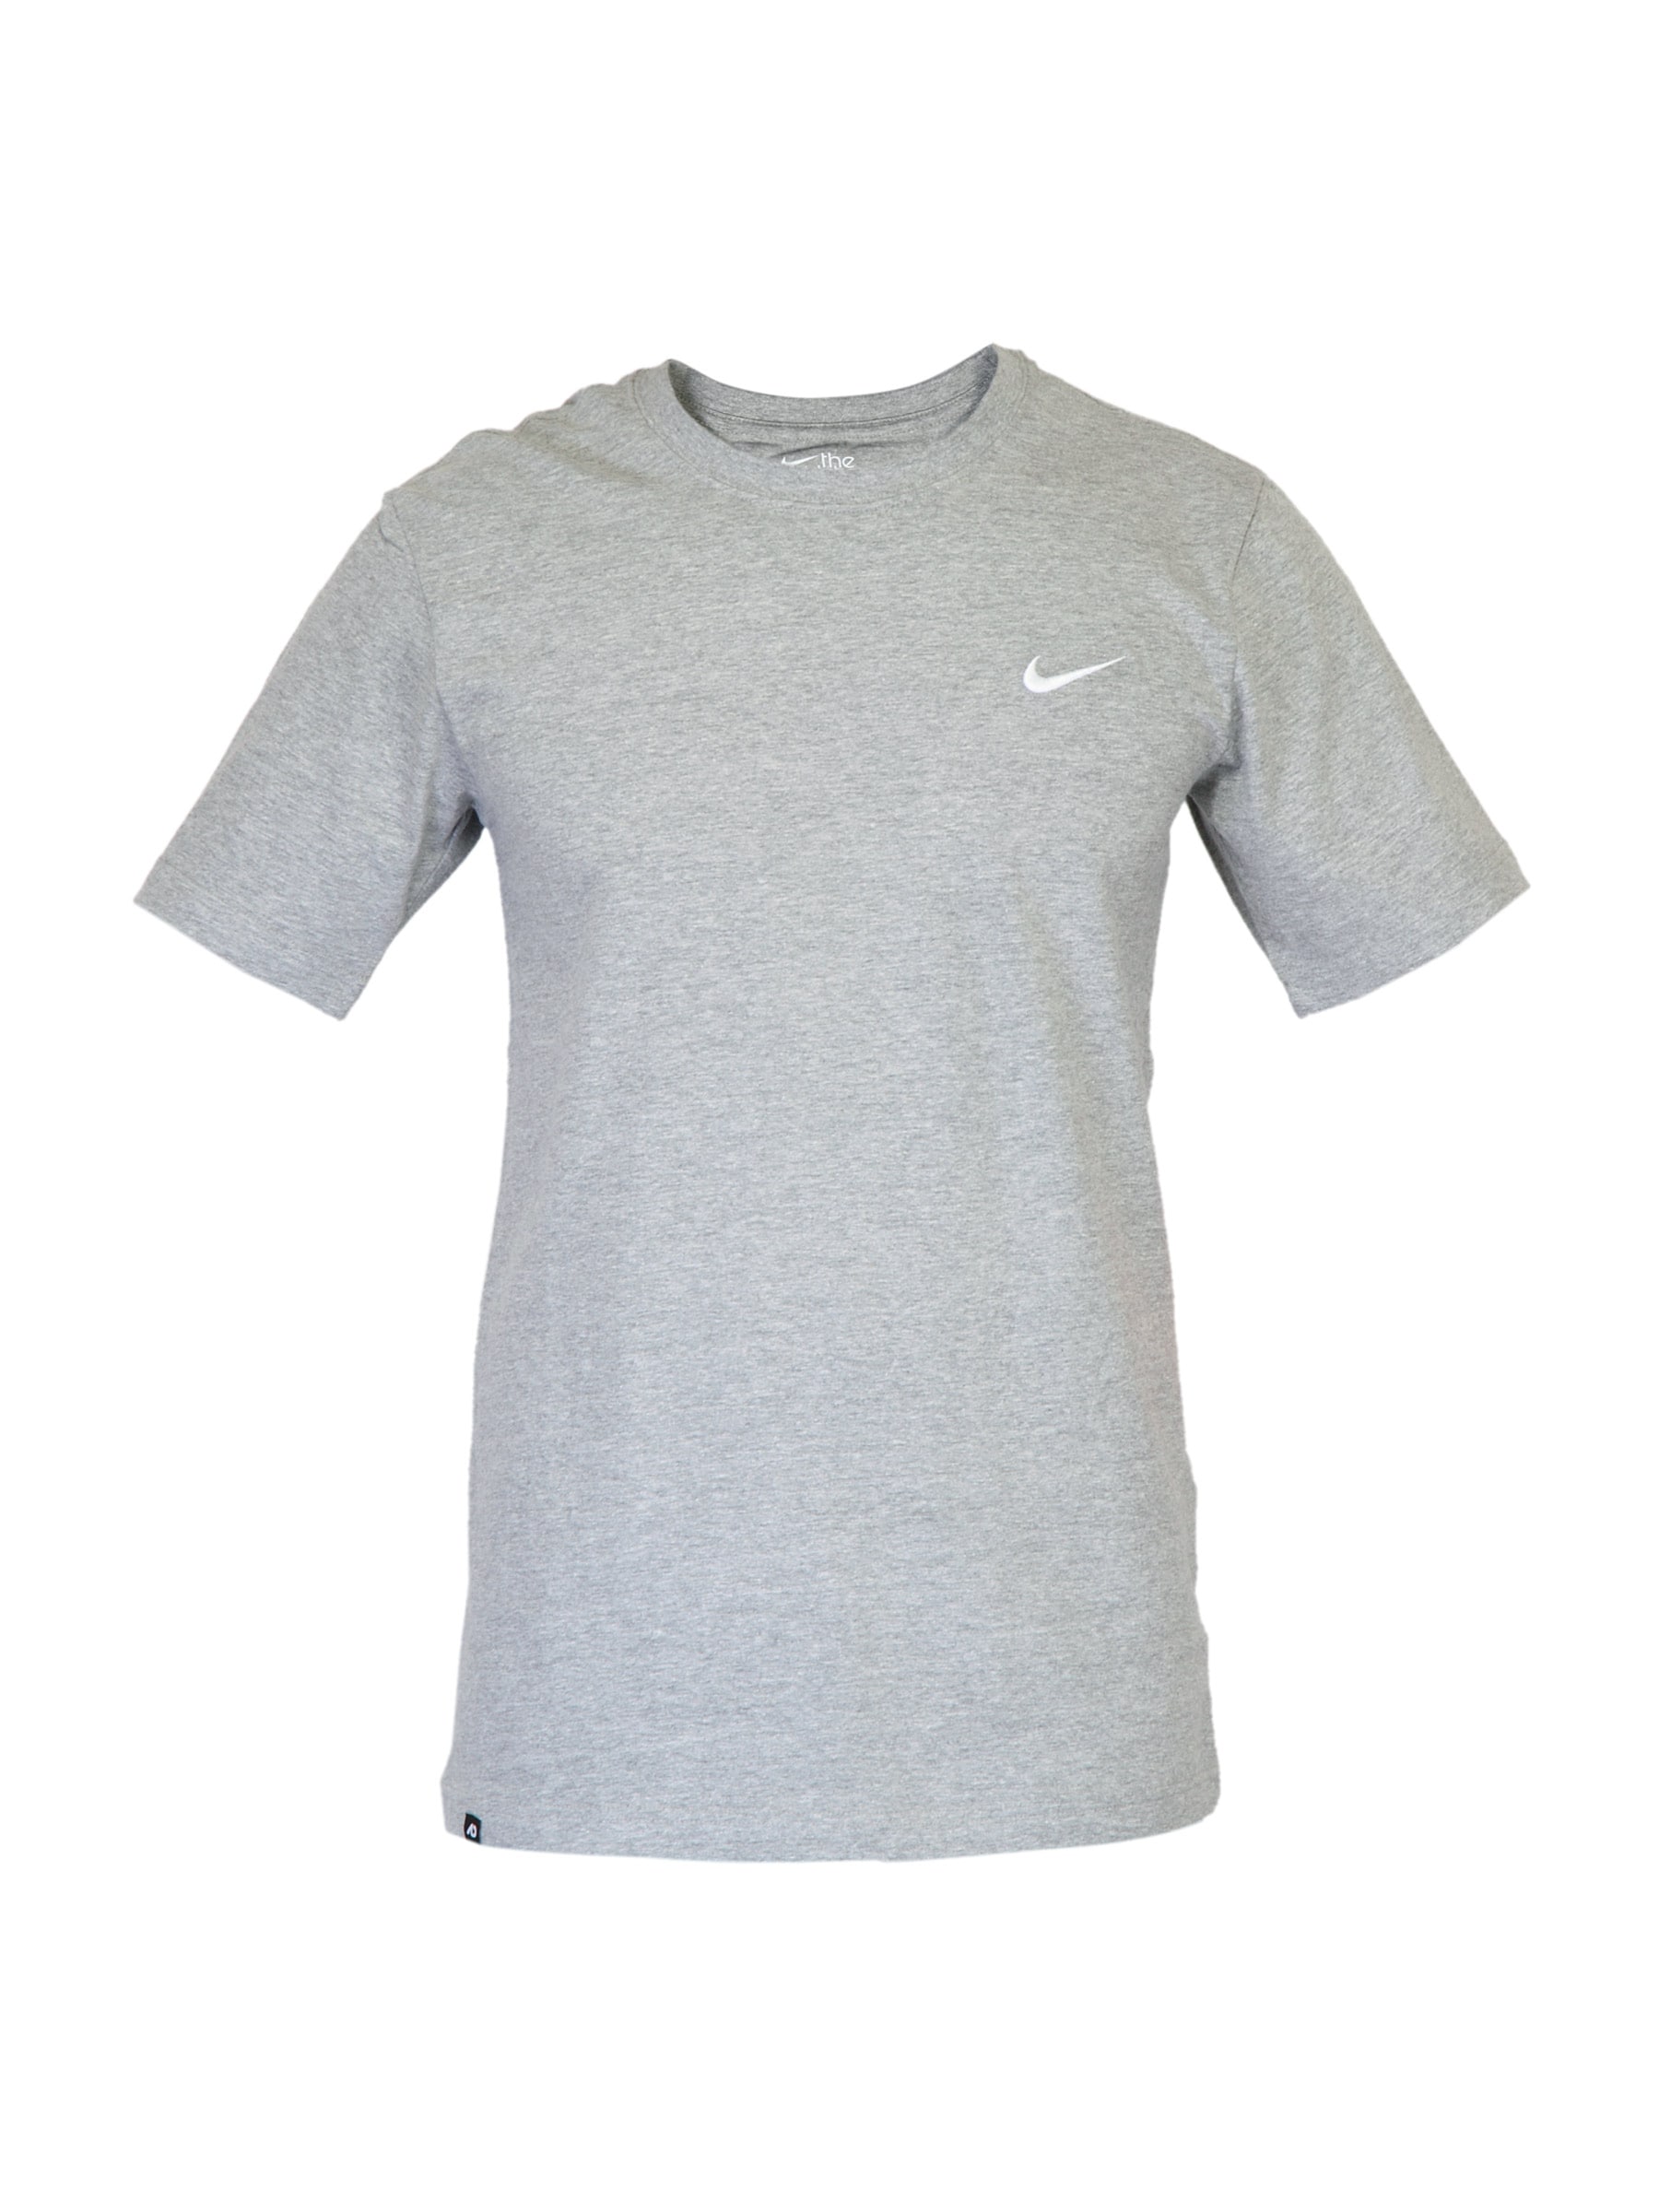 Nike Men Basic Grey T-shirt